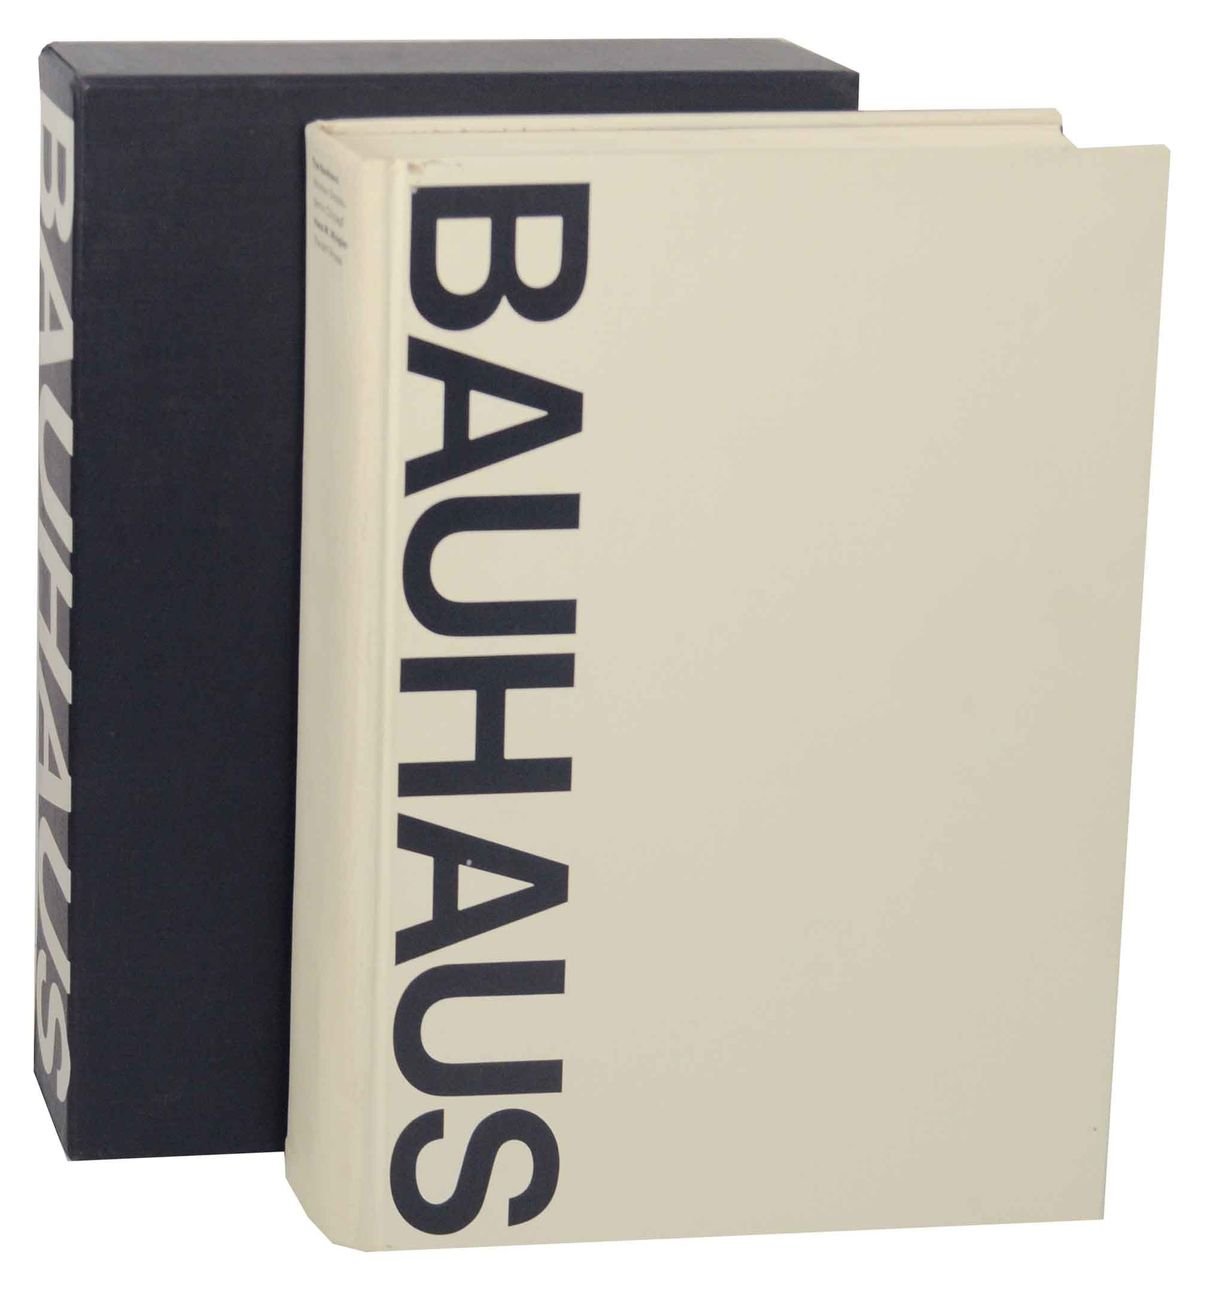 Hans M. Wingler – Bauhaus. Weimar, Dessau, Berlin, Chicago (The MIT Press, 1969)